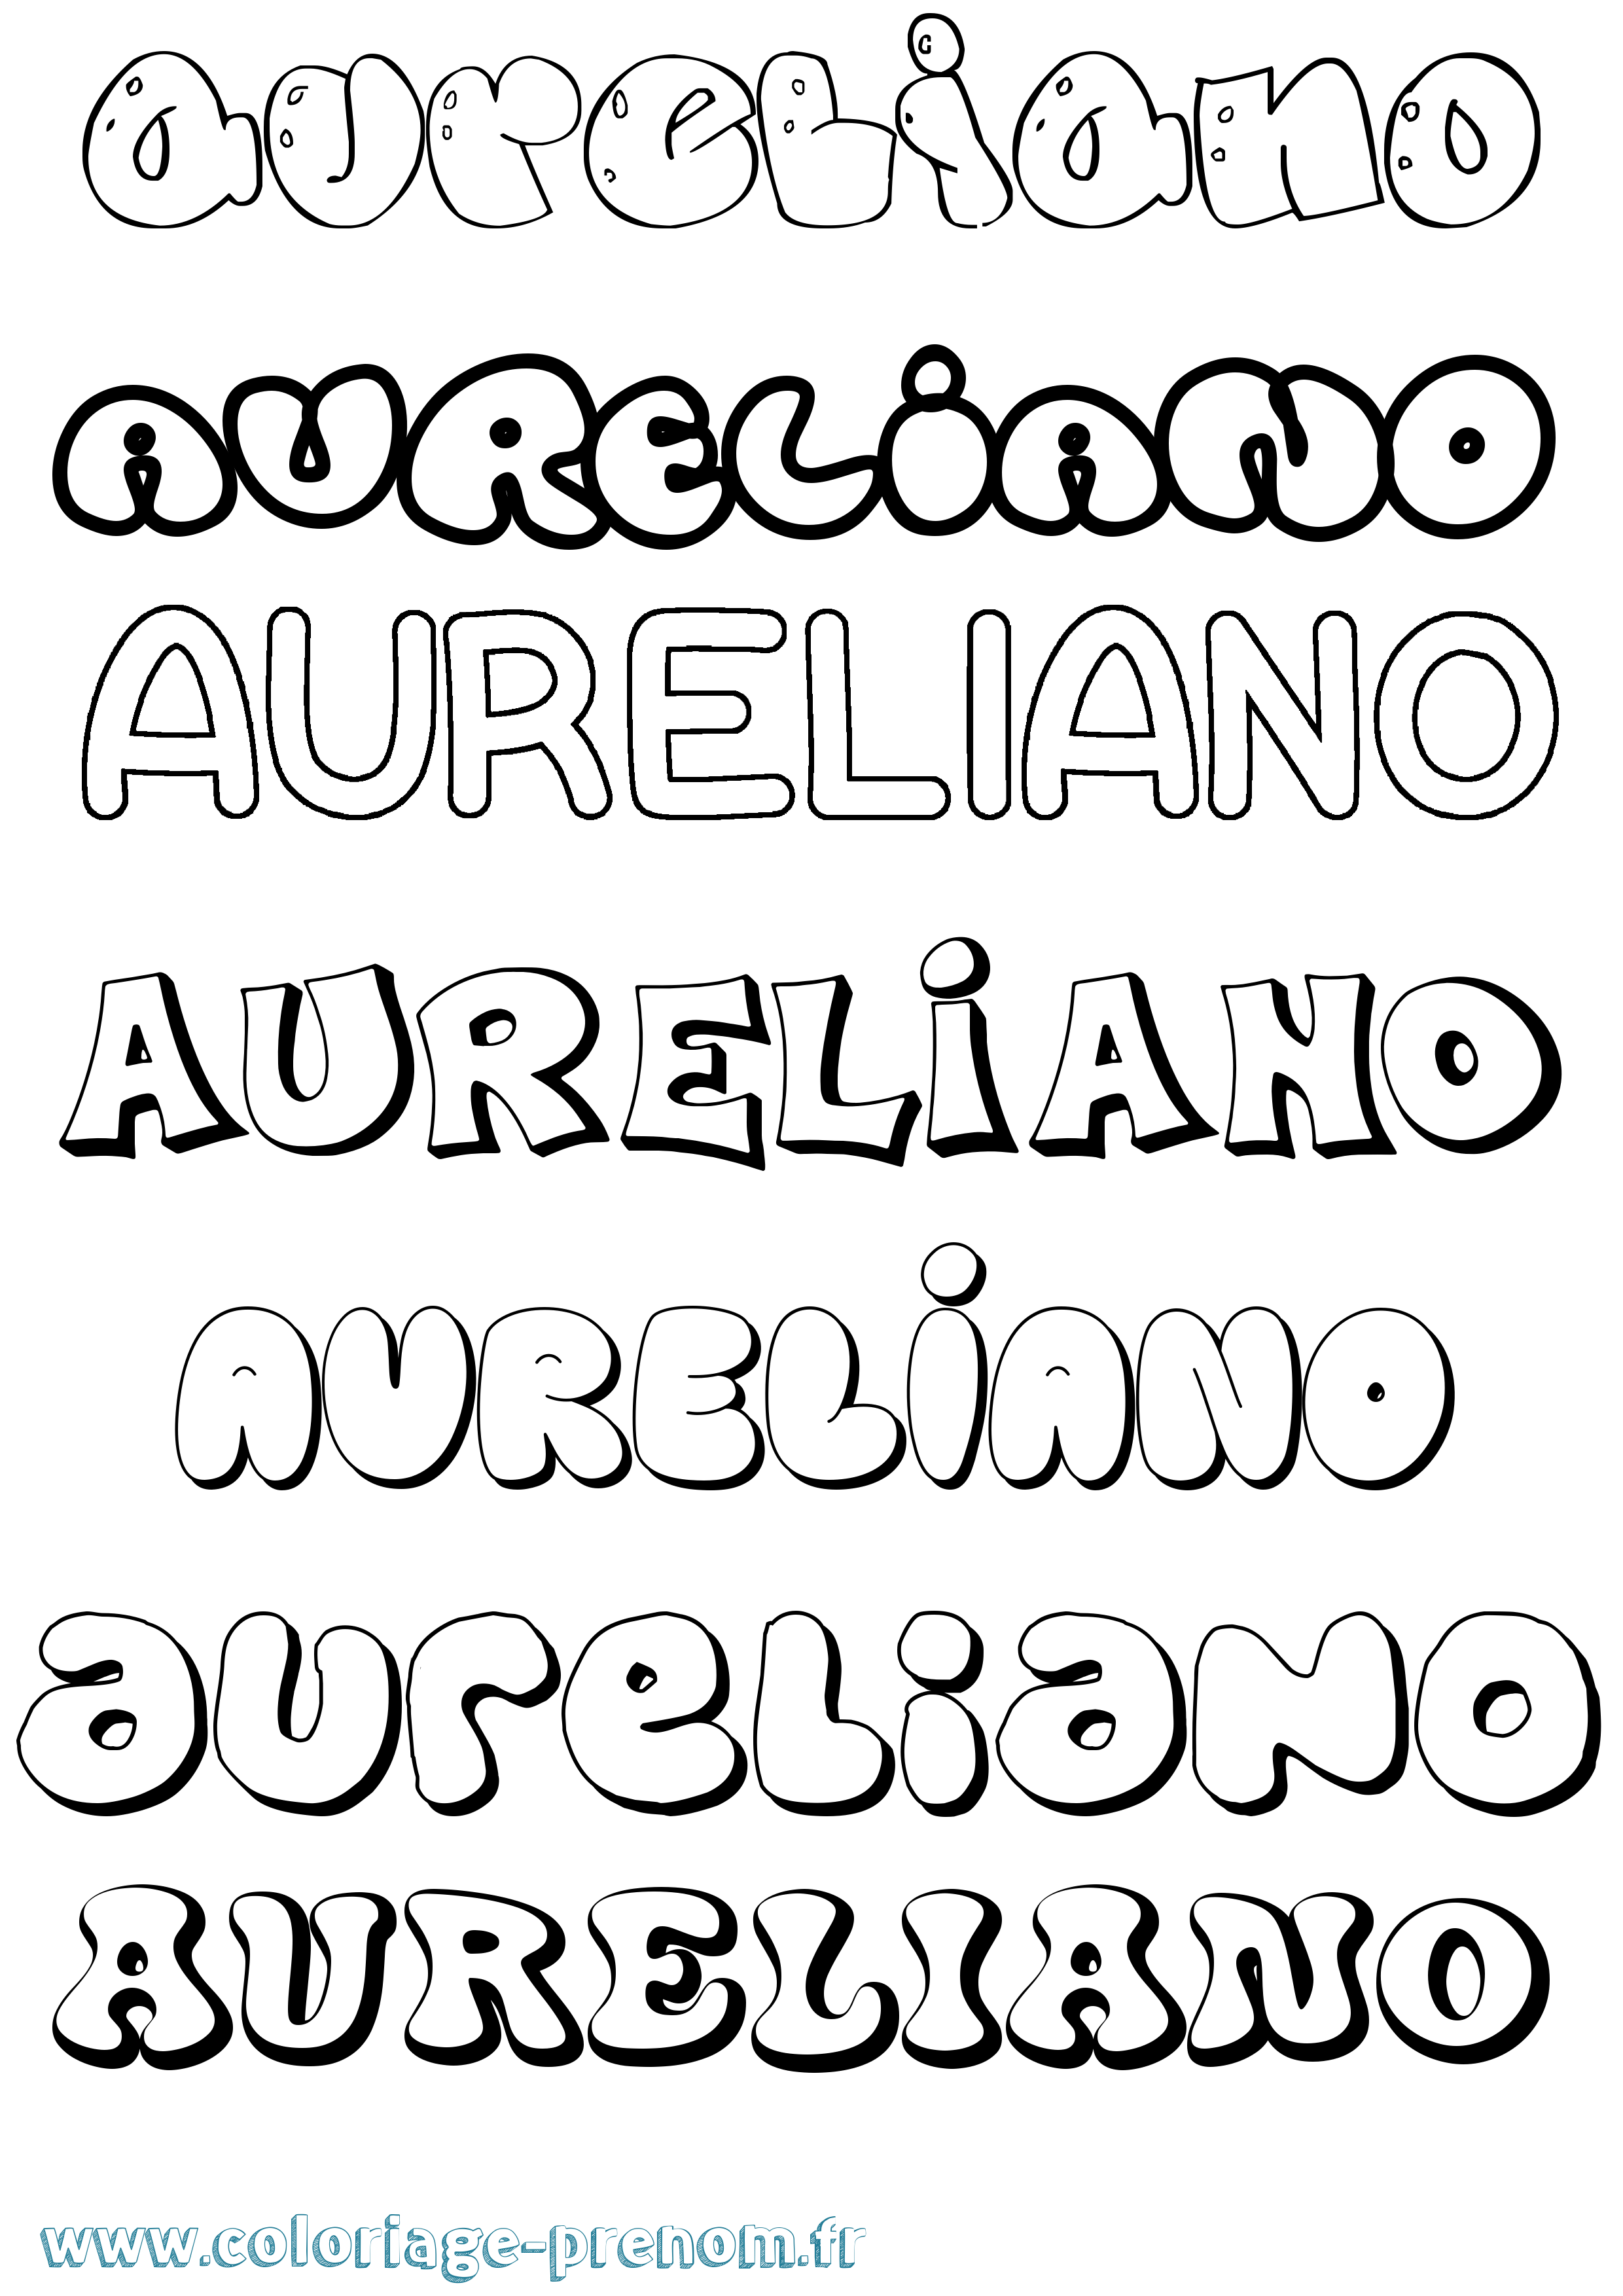 Coloriage prénom Aureliano Bubble